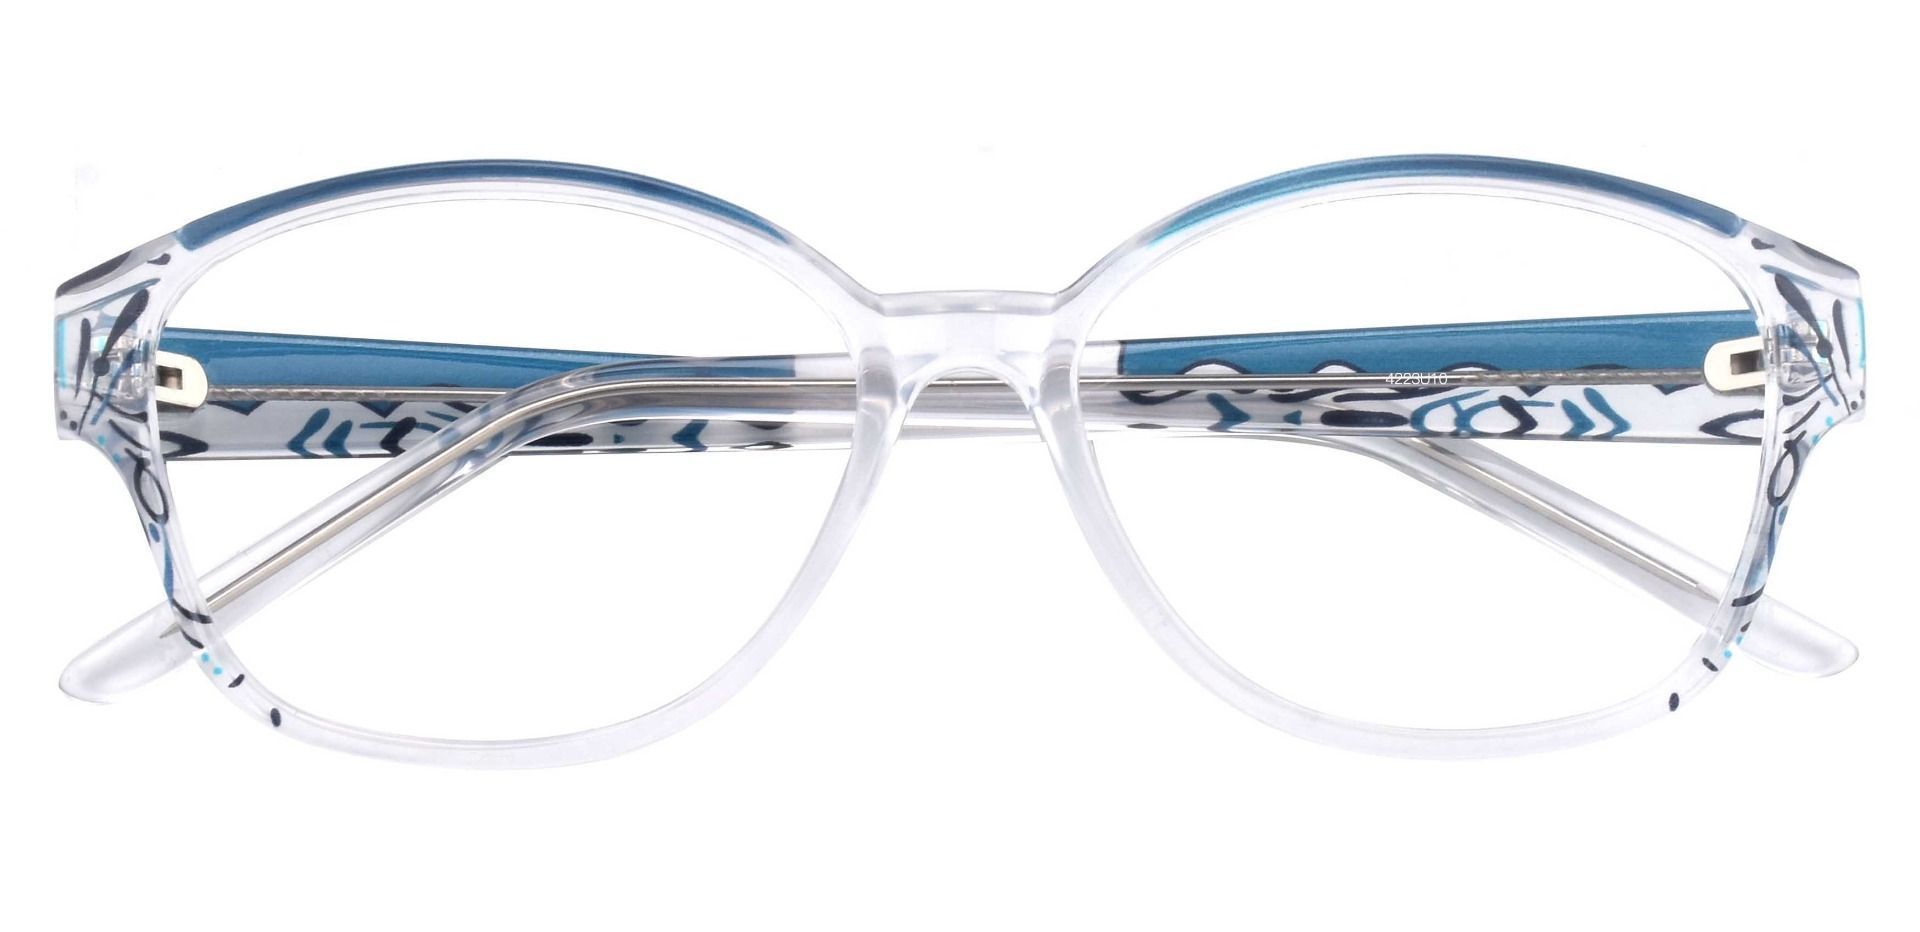 Price Oval Prescription Glasses - Blue